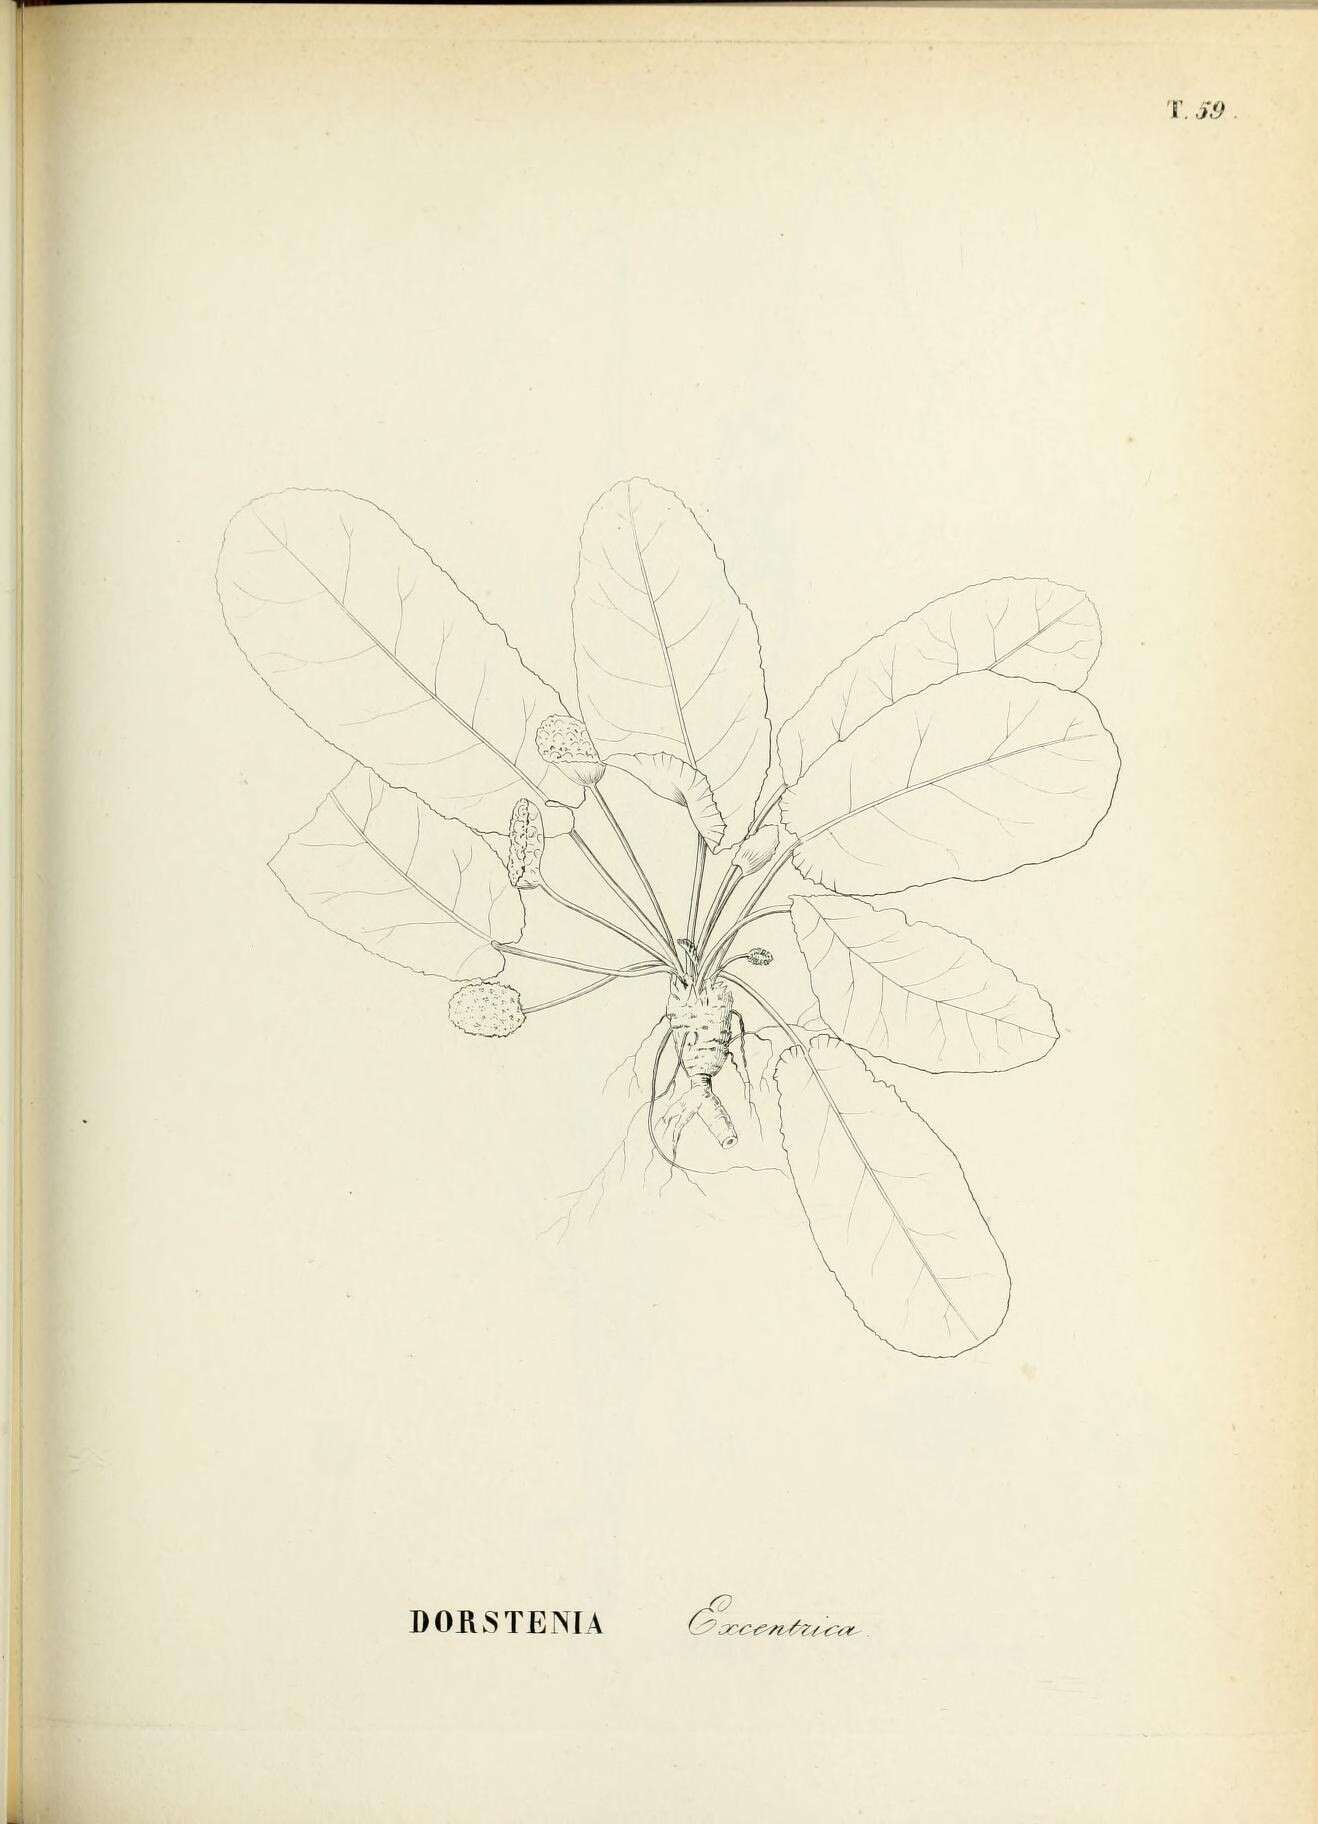 Image of Dorstenia excentrica Moric.